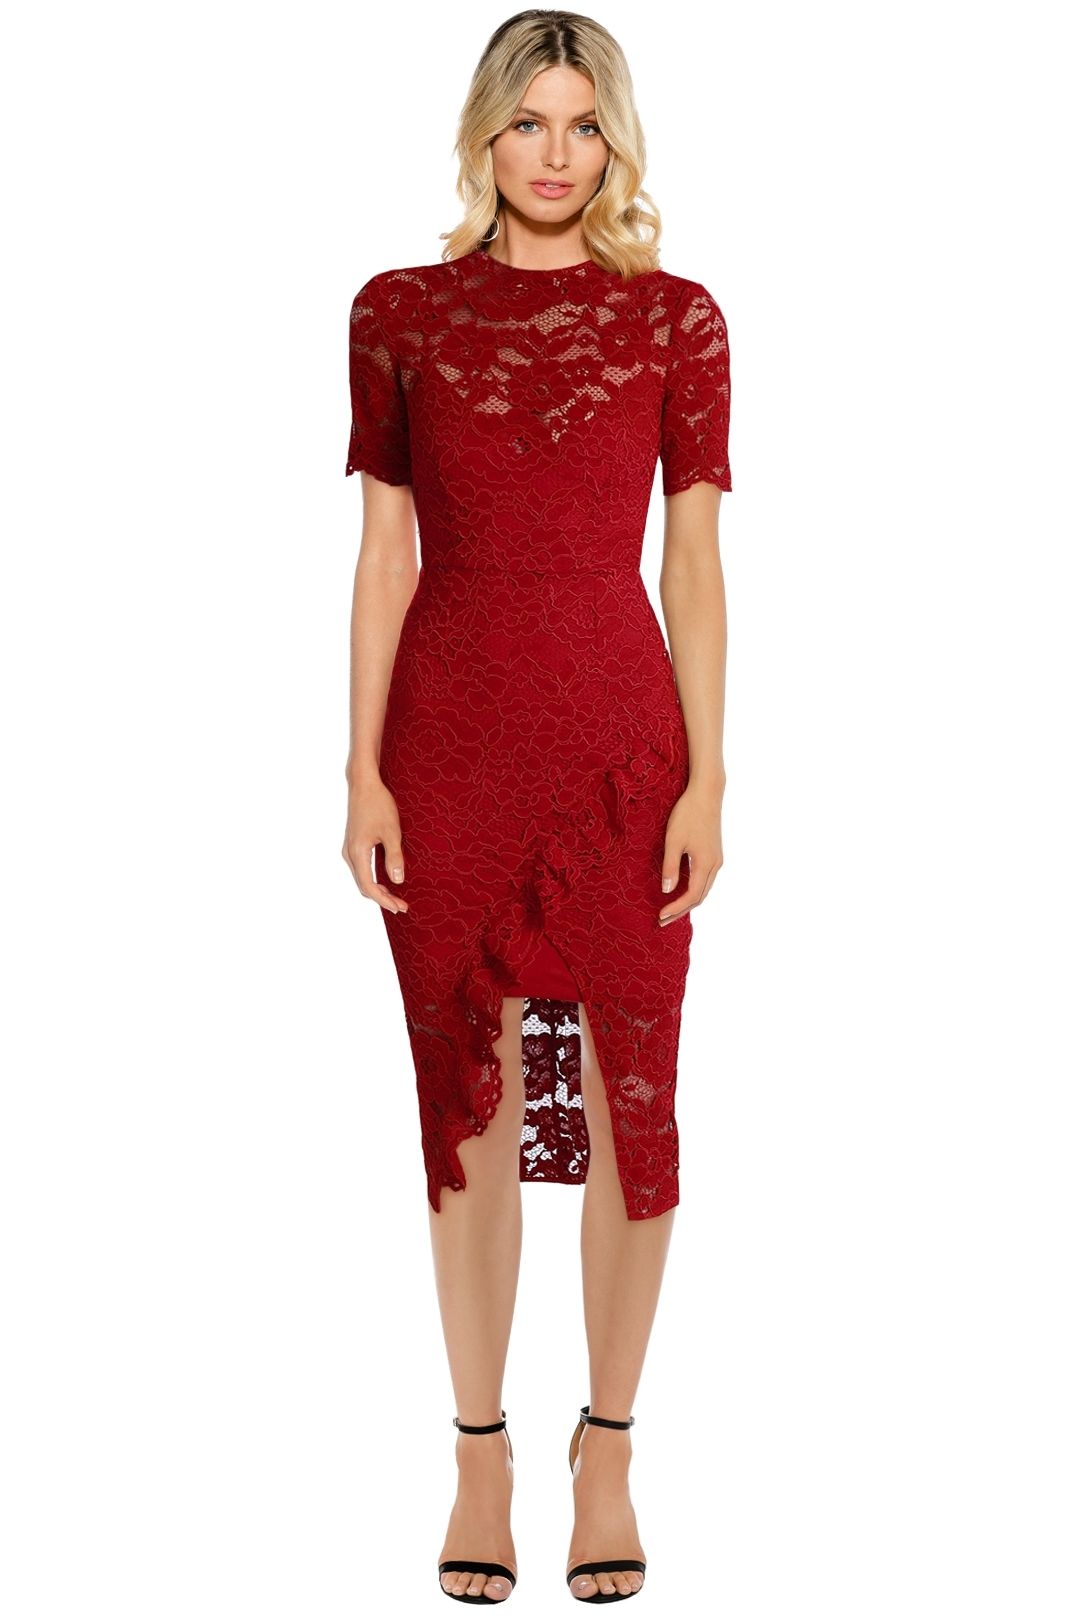 Yeojin Bae - Cornelli Lace Alyssa Dress - Red - Front 